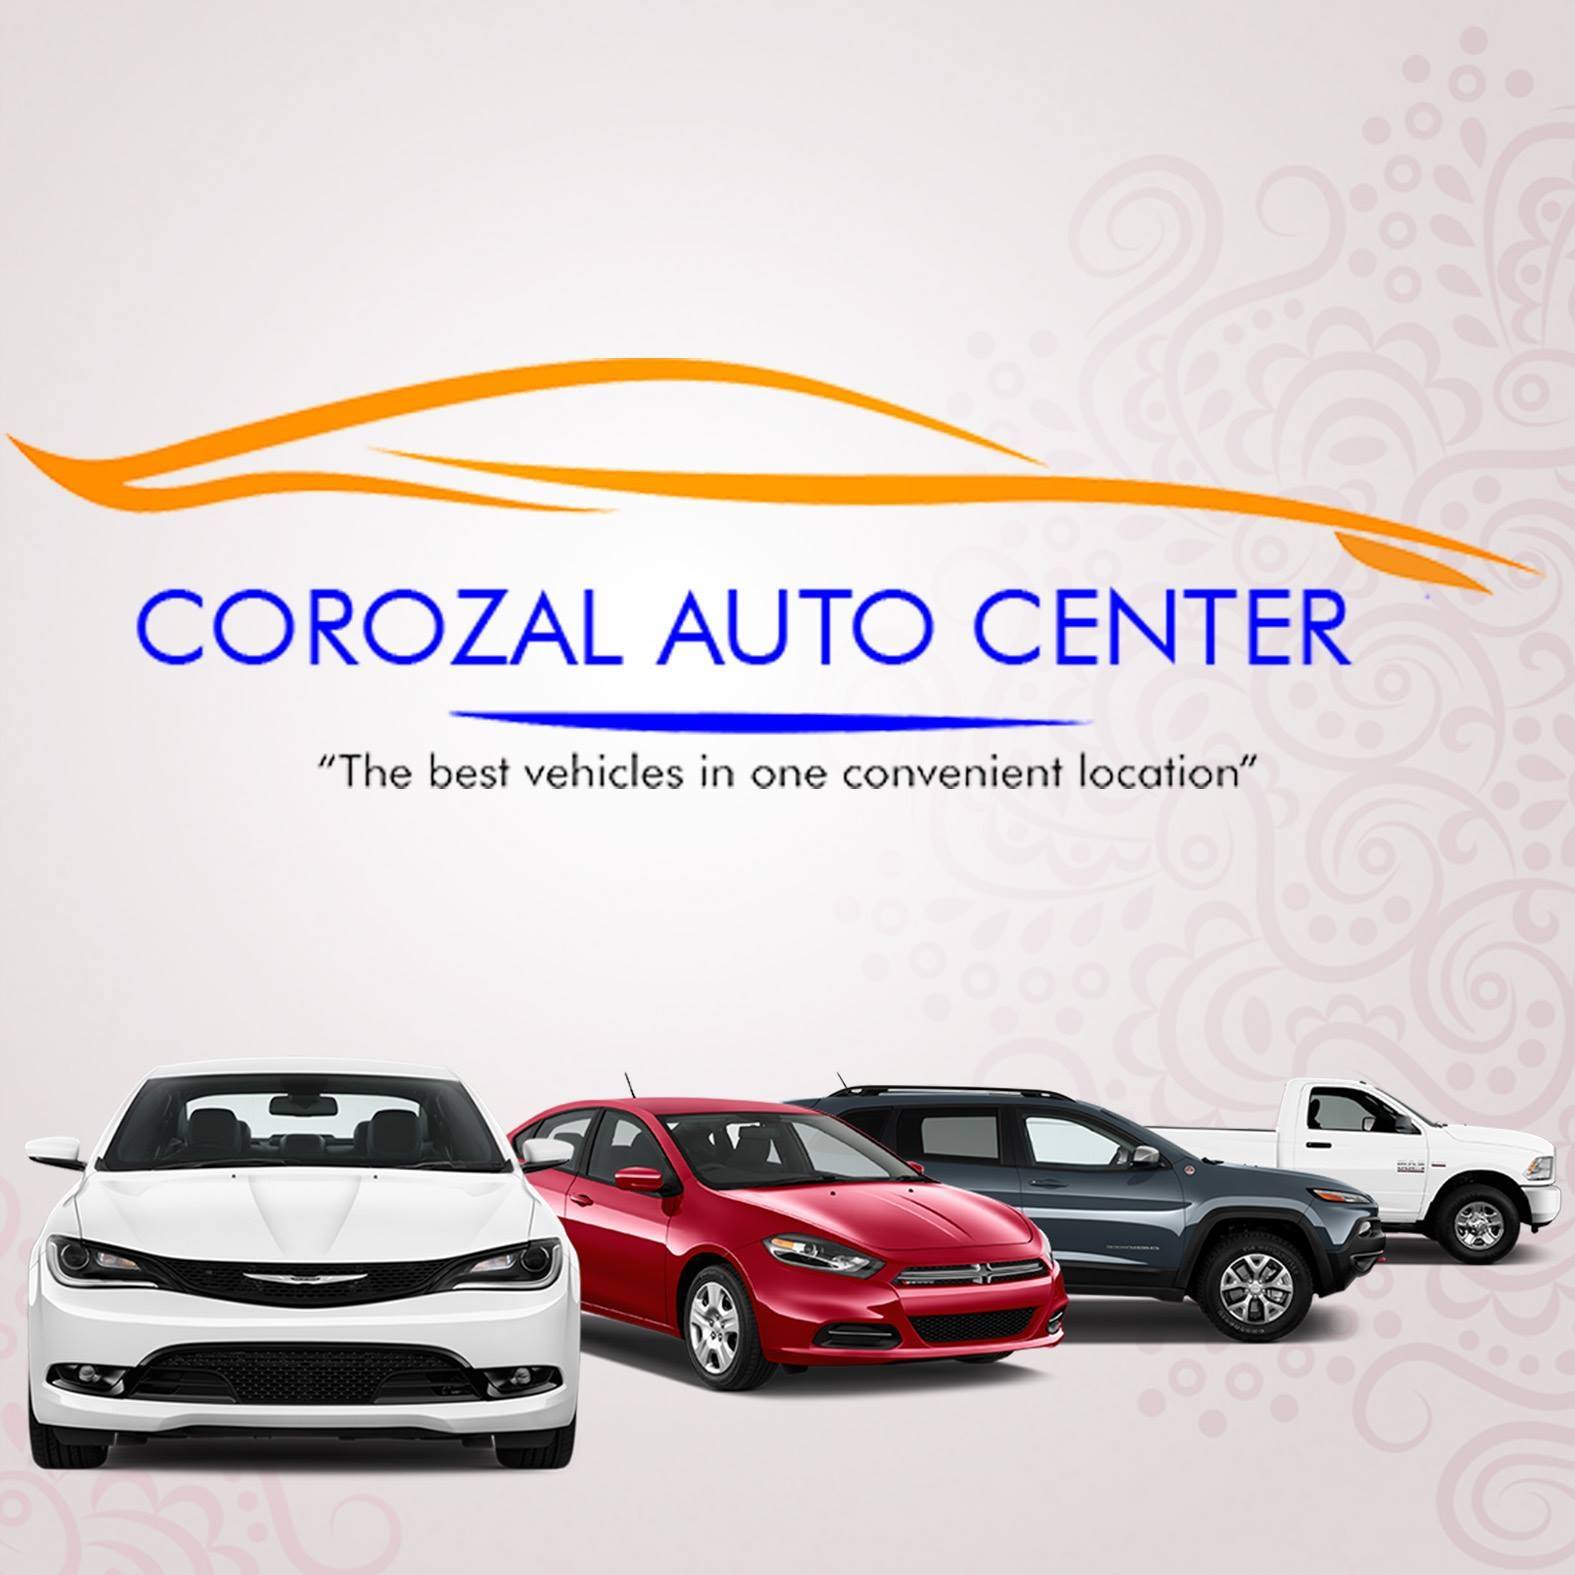 Corozal Auto Center - Belize, Central America